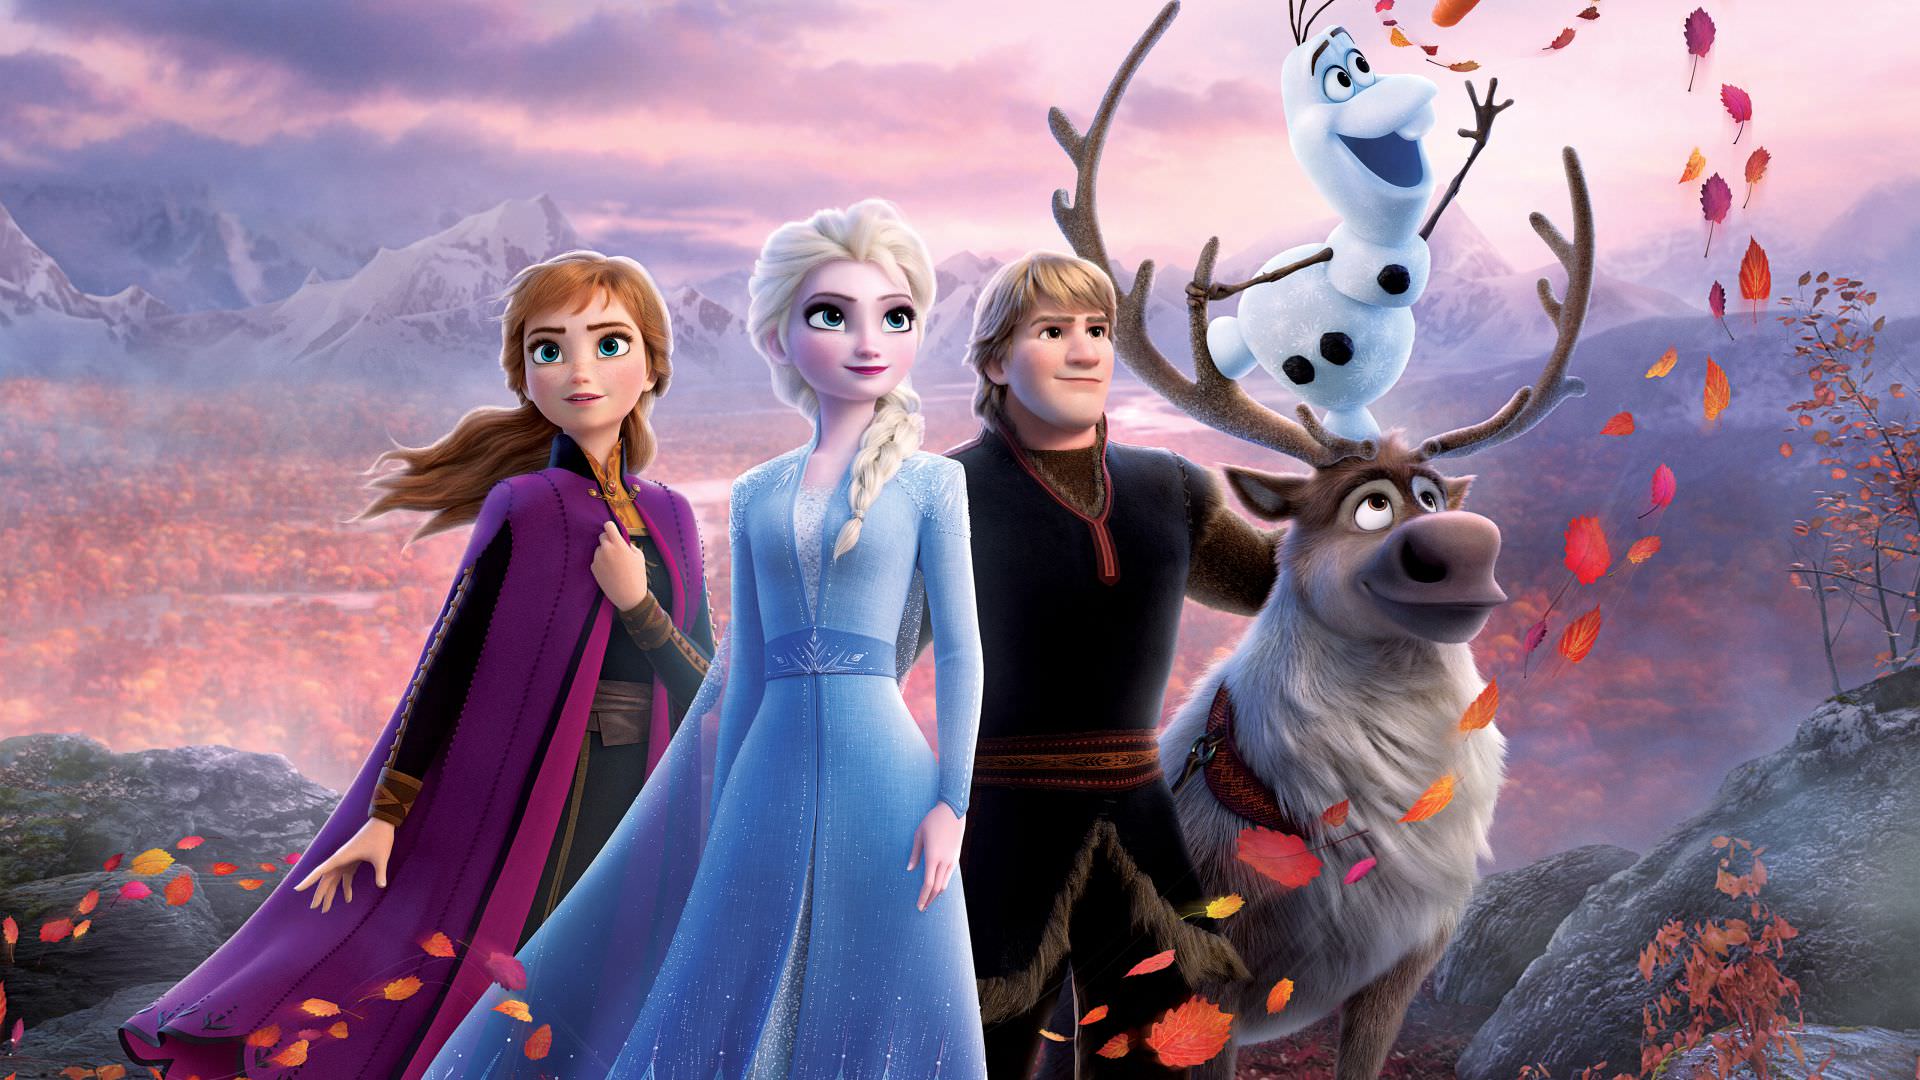 عدم بازگشت کارگردان اصلی فروزن برای انیمیشن Frozen 3